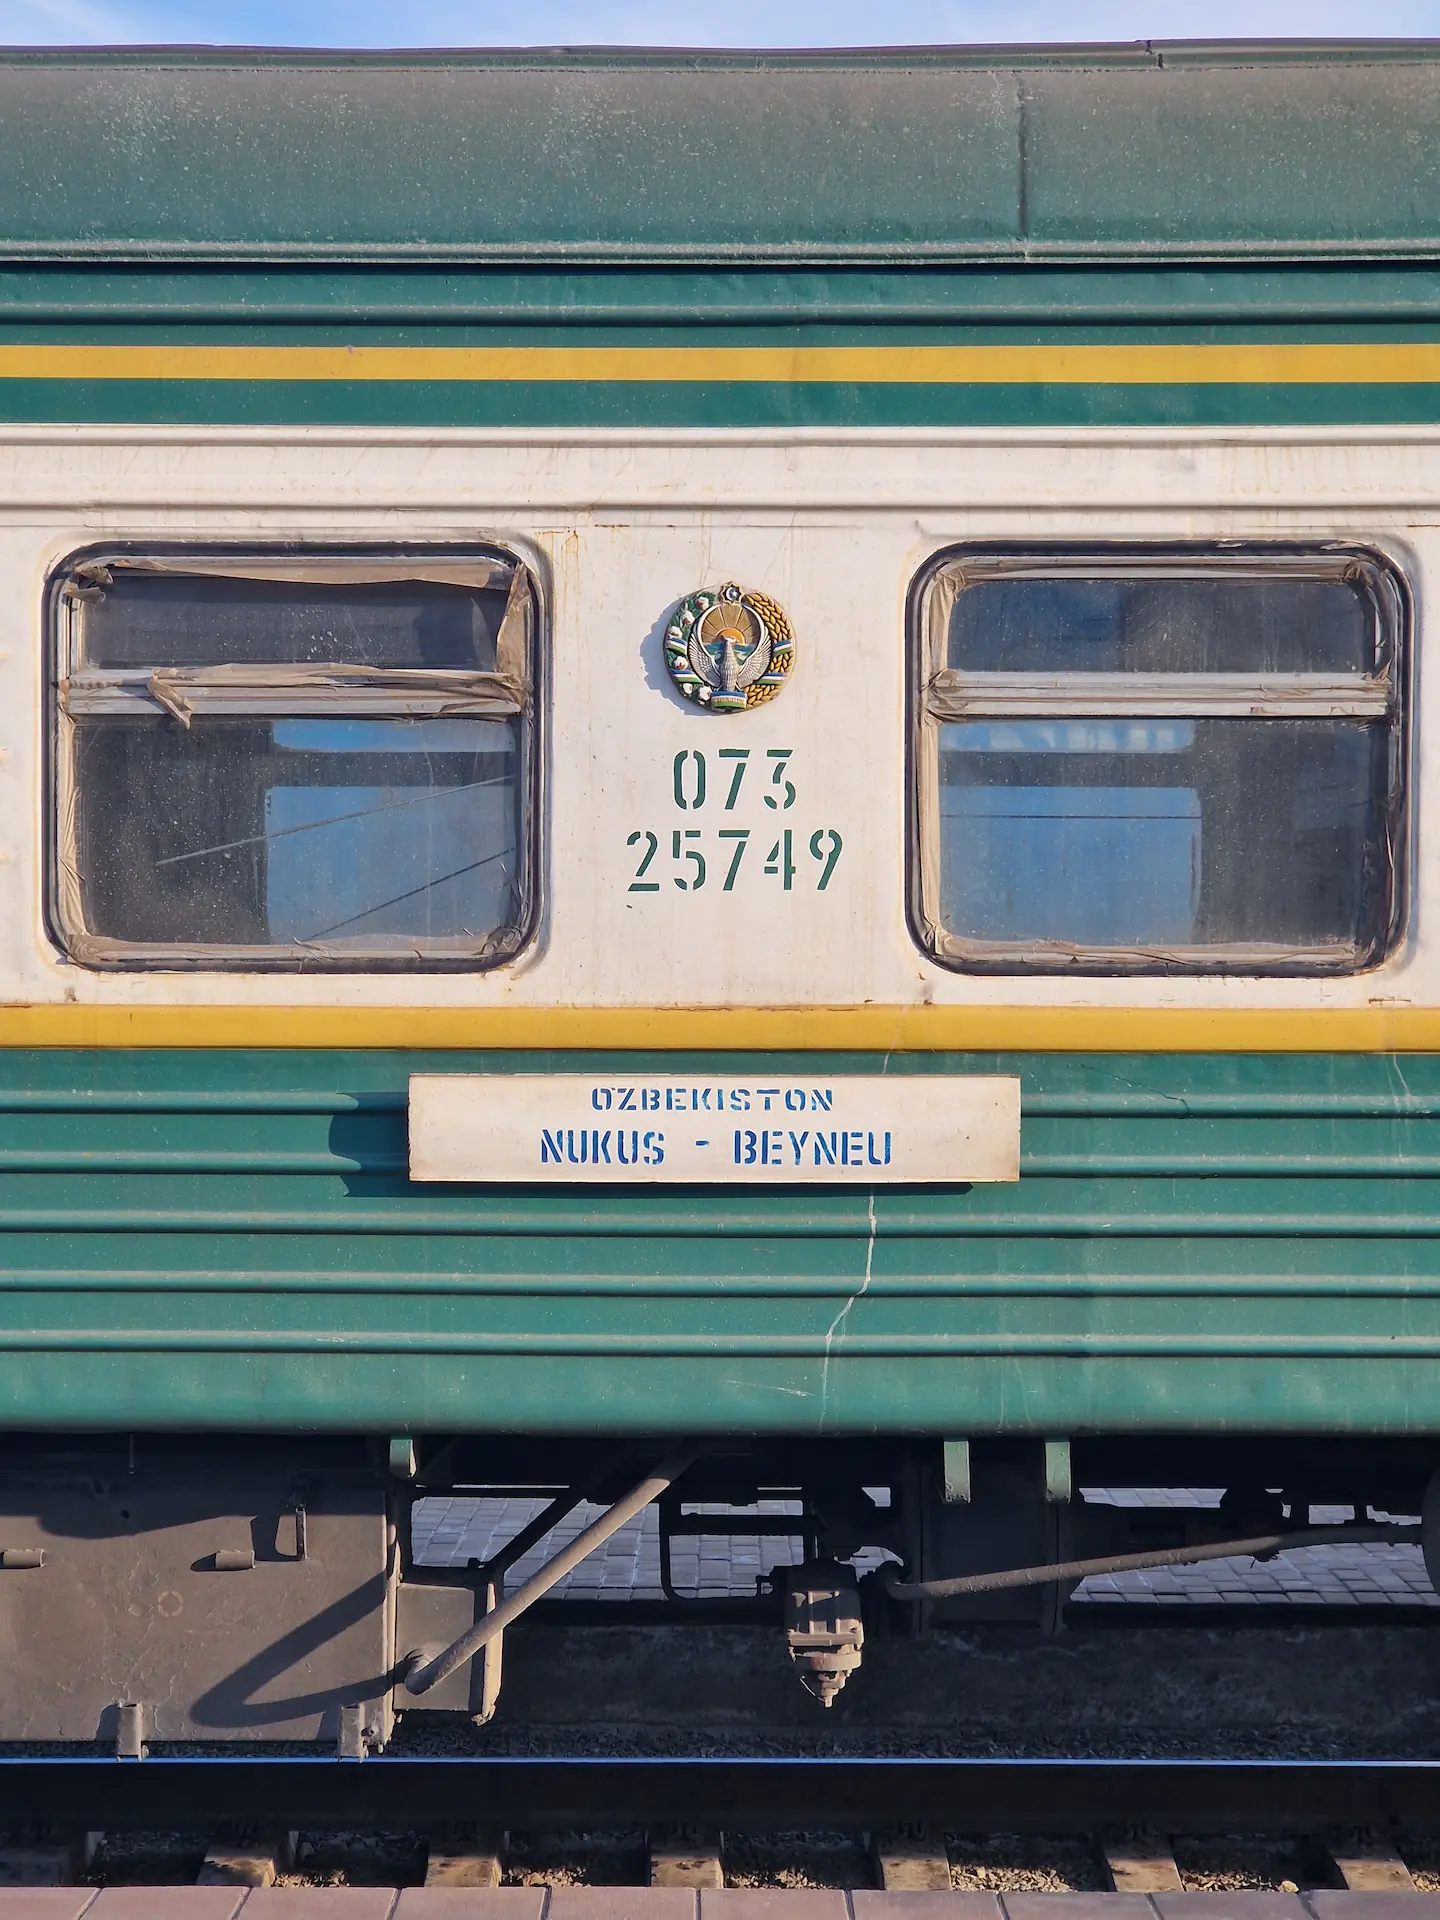 Profil de notre vieux train vert et jaune. Dessus, on lit 'Ozbekistan, Nukus - Beyneu'.